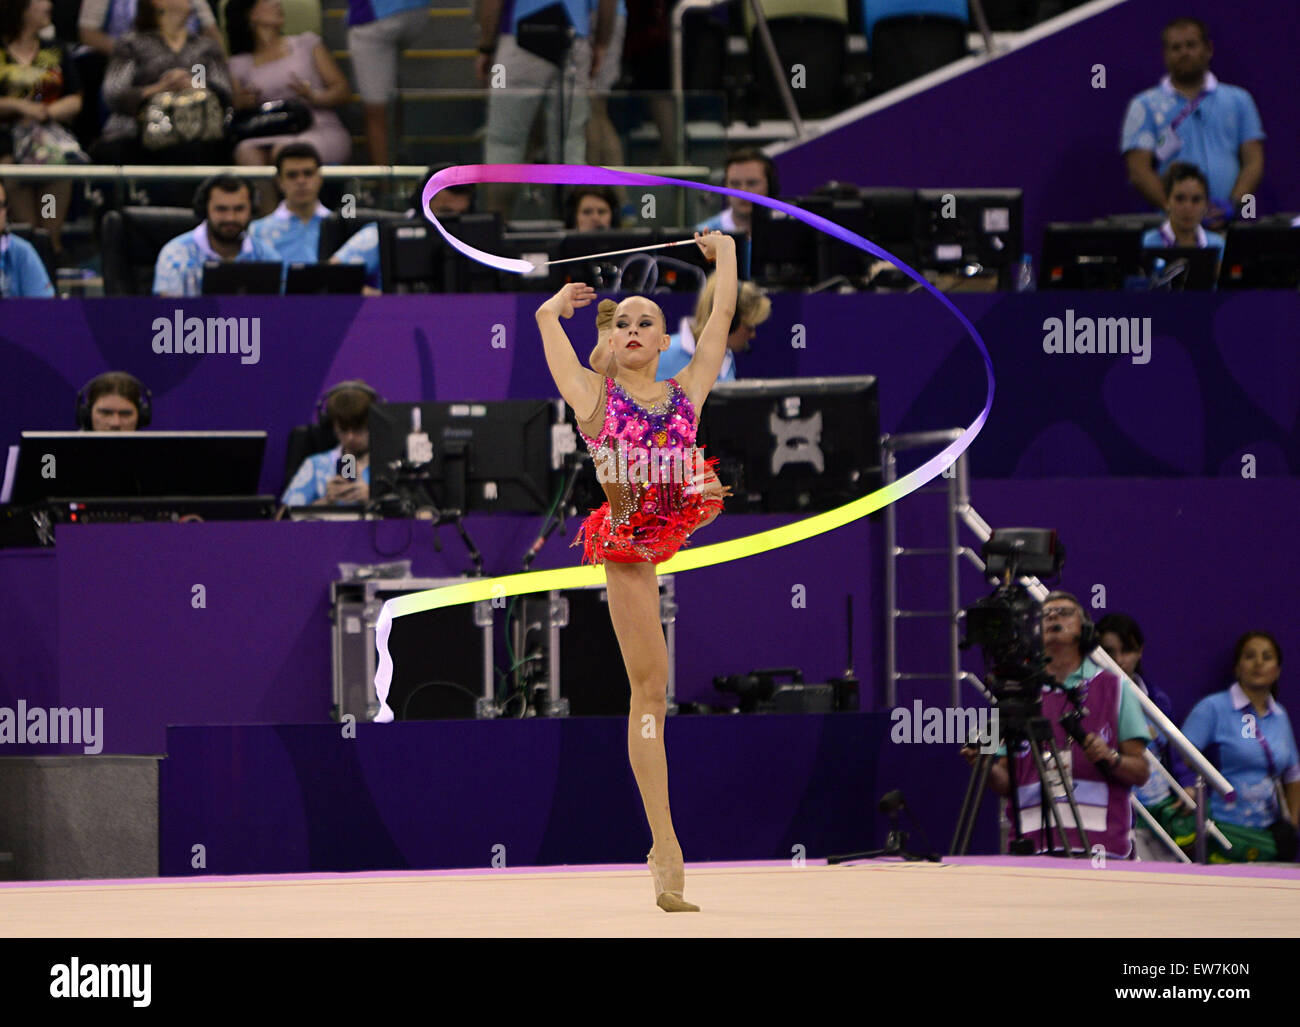 (150619)--BAKU, 19 Juni, 2015(Xinhua)--Yana Kudryavtseva Russland gewinnt die Goldmedaille der Damen Gymnastik rhythmische Band bei den europäischen spielen in Aserbaidschan Baku am 19. Juni 2015. (Xinhua/Tofik Babayev) Stockfoto